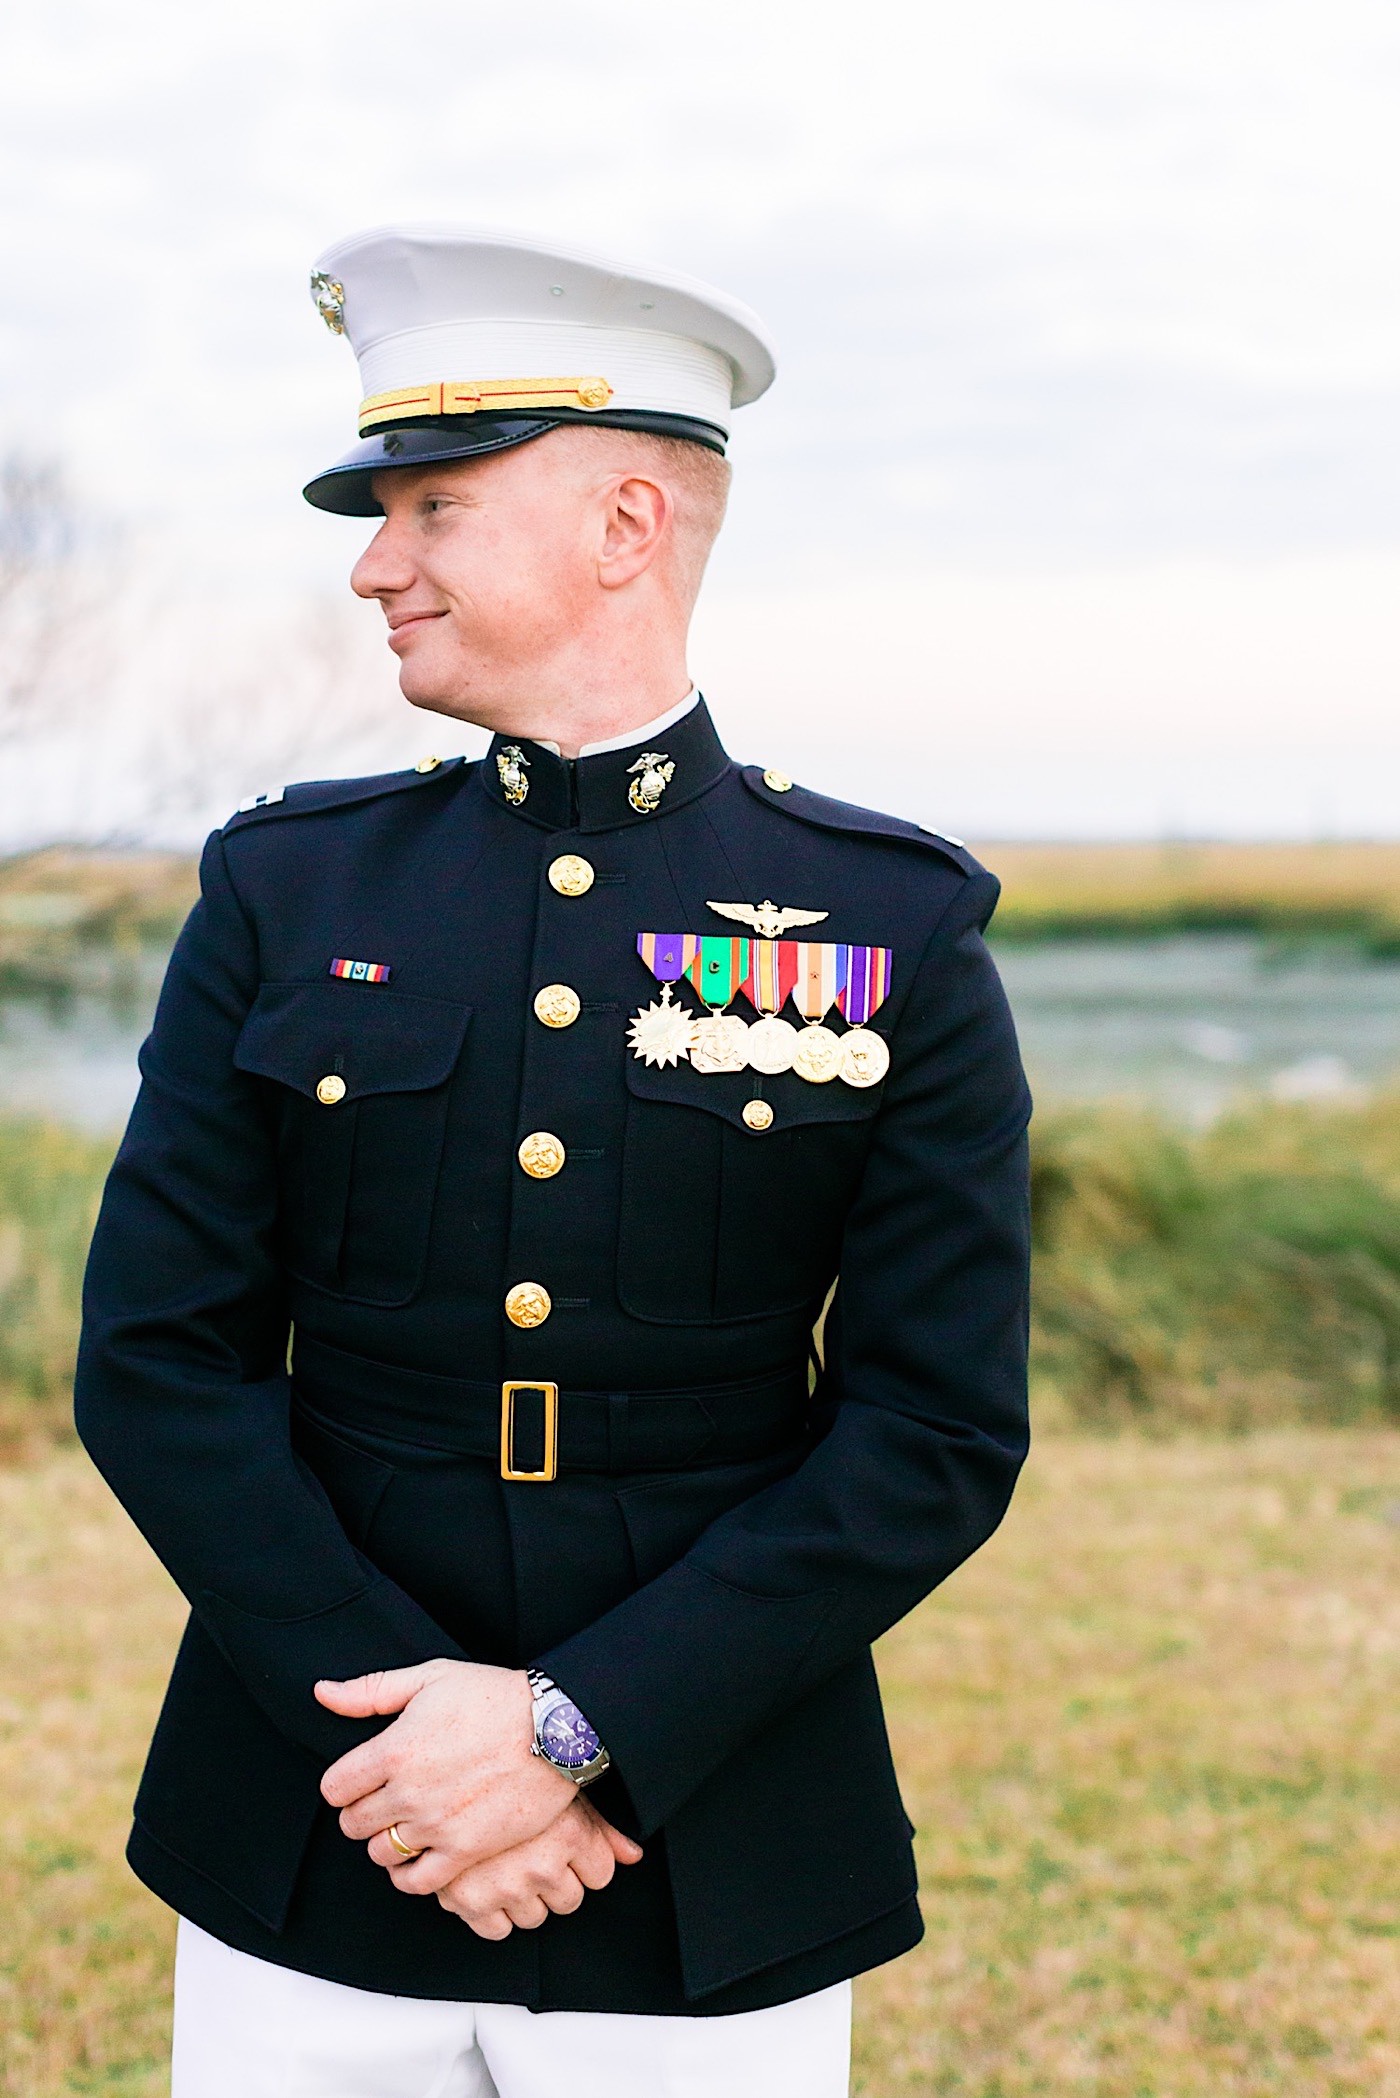 Agapae Oaks Wedding in Beaufort, Marine, groom, marine groom, groom in military